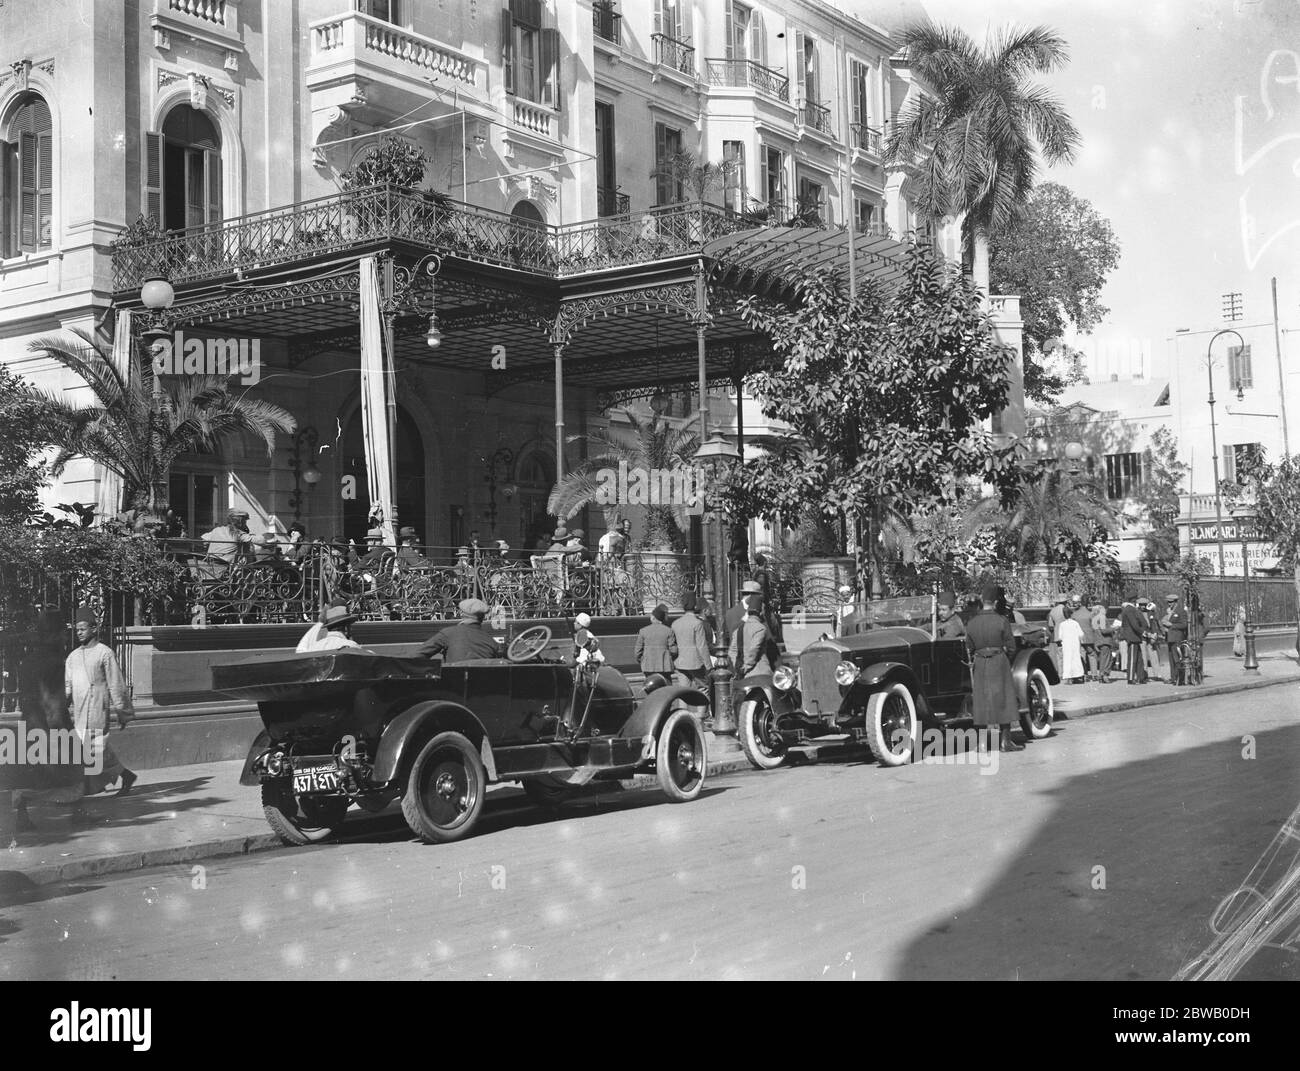 La saison du Caire ; le célèbre hôtel de Shepheard montrant la terrasse . Février 1925 Banque D'Images